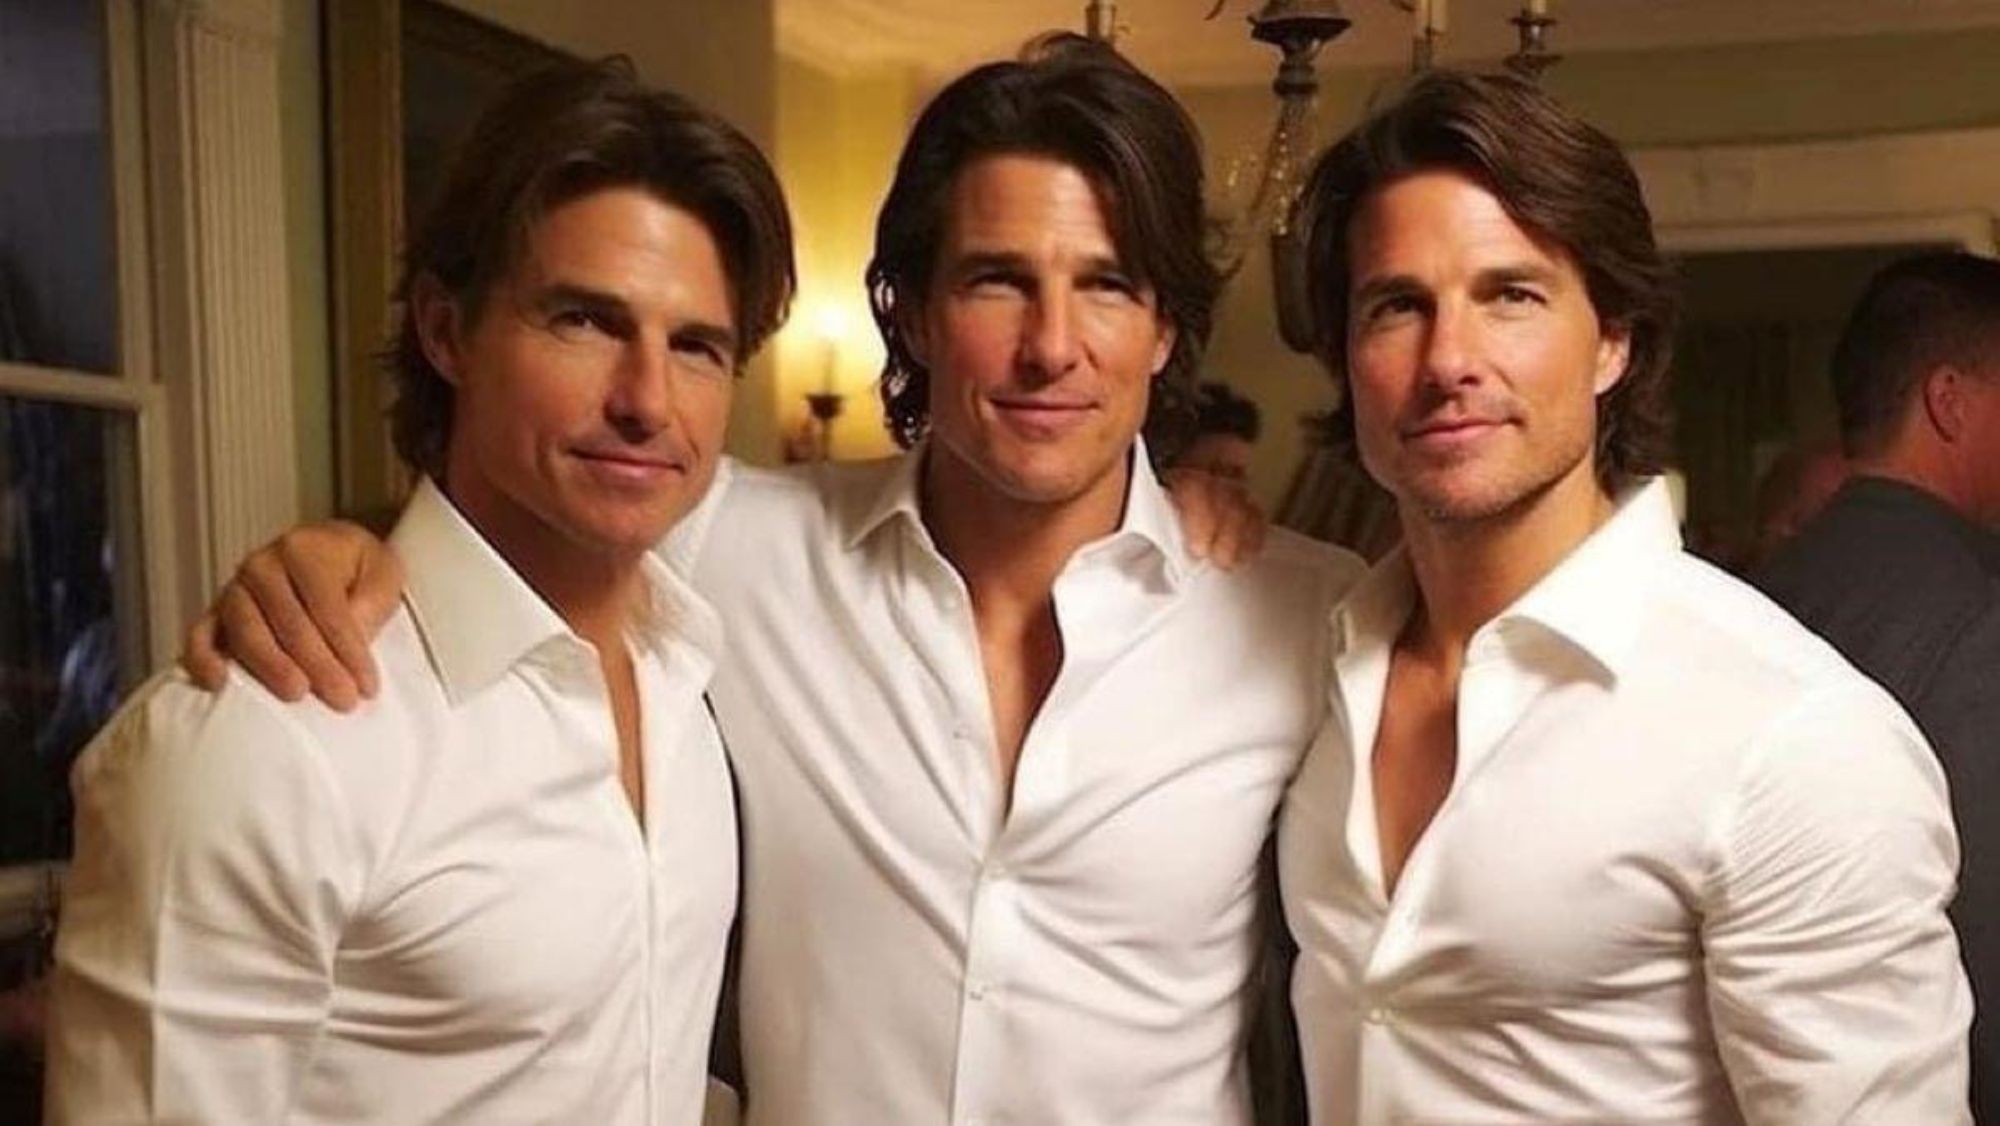 La imagen de los dobles de Tom Cruise que se ha hecho viral